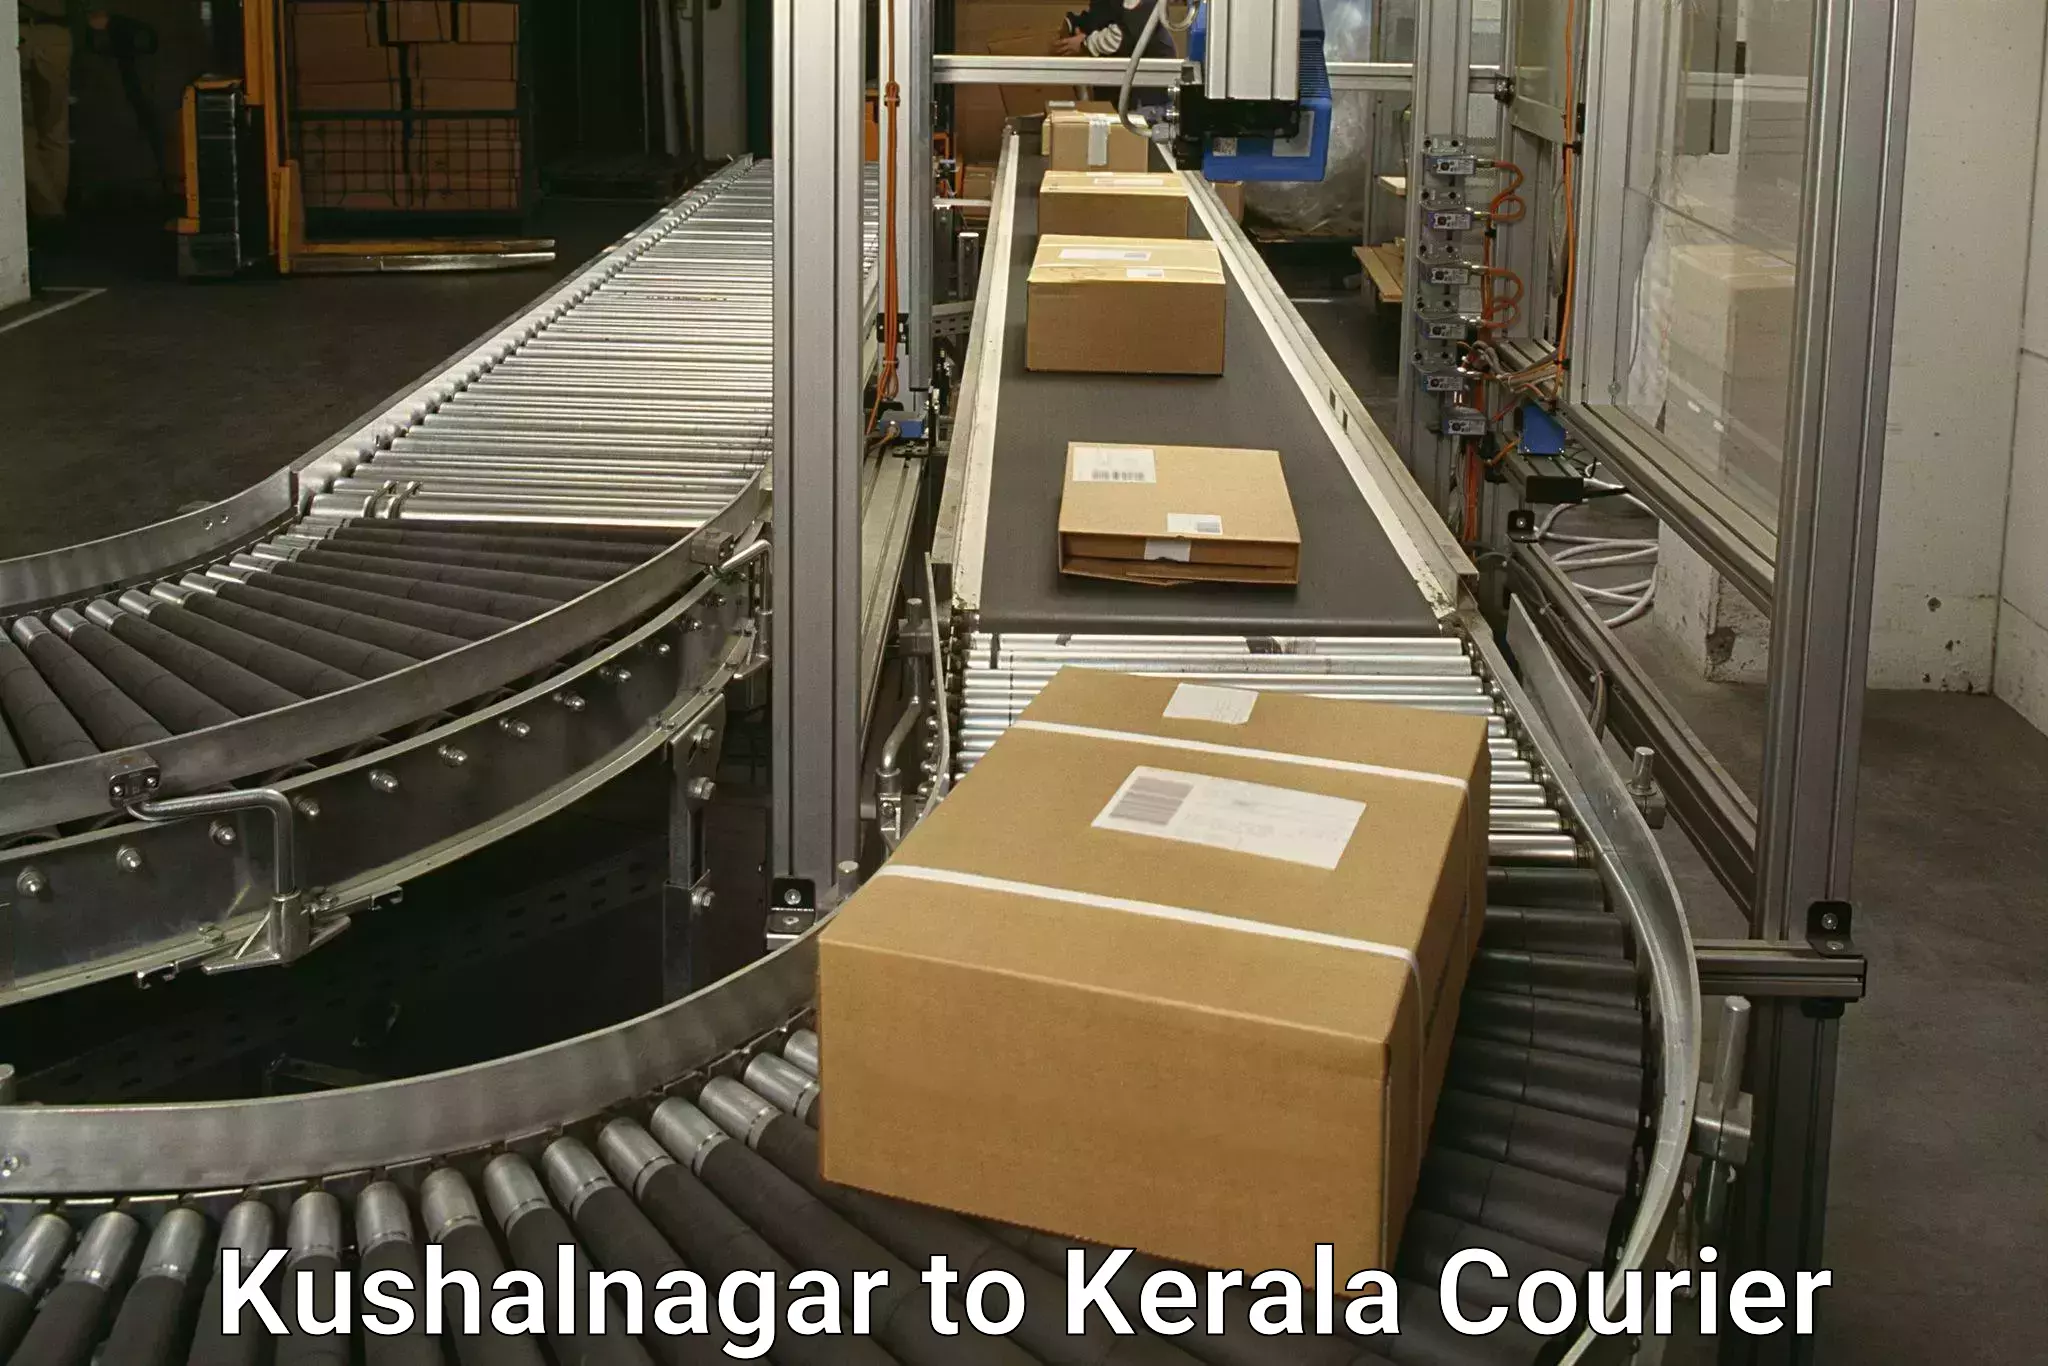 Courier service partnerships Kushalnagar to Kuthiathode